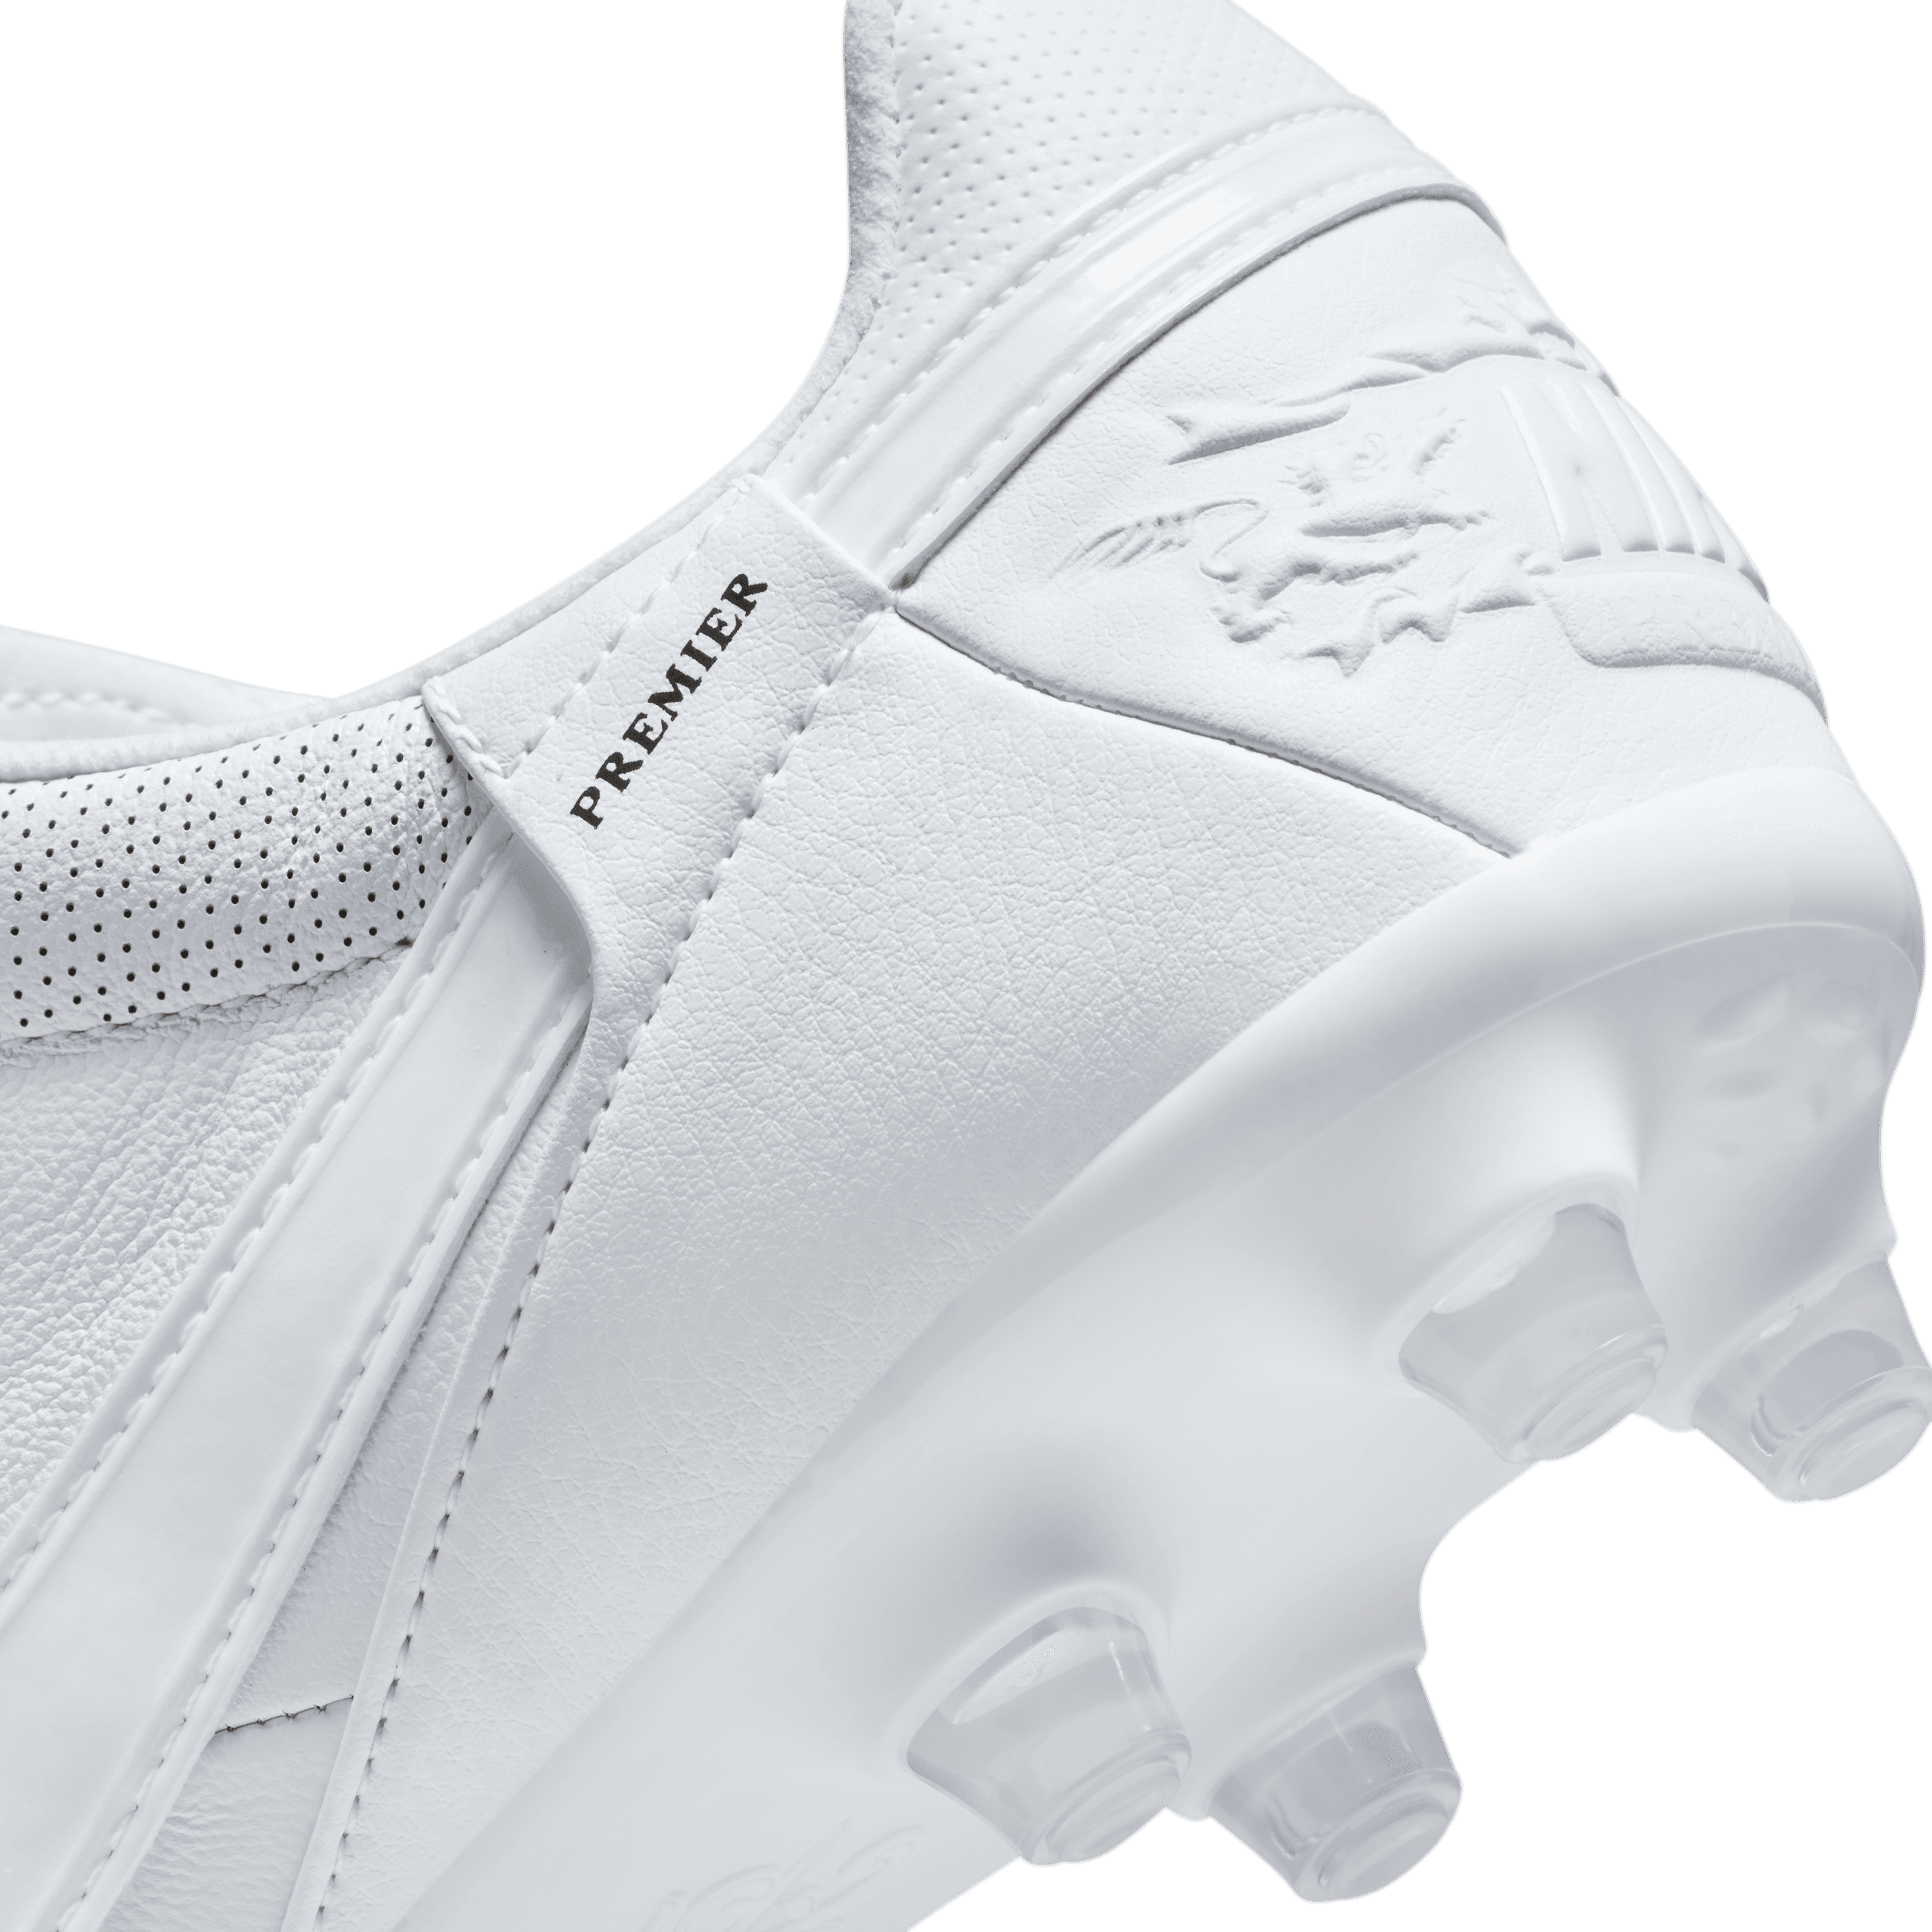 Nike Premier 3 FG-White/White/White